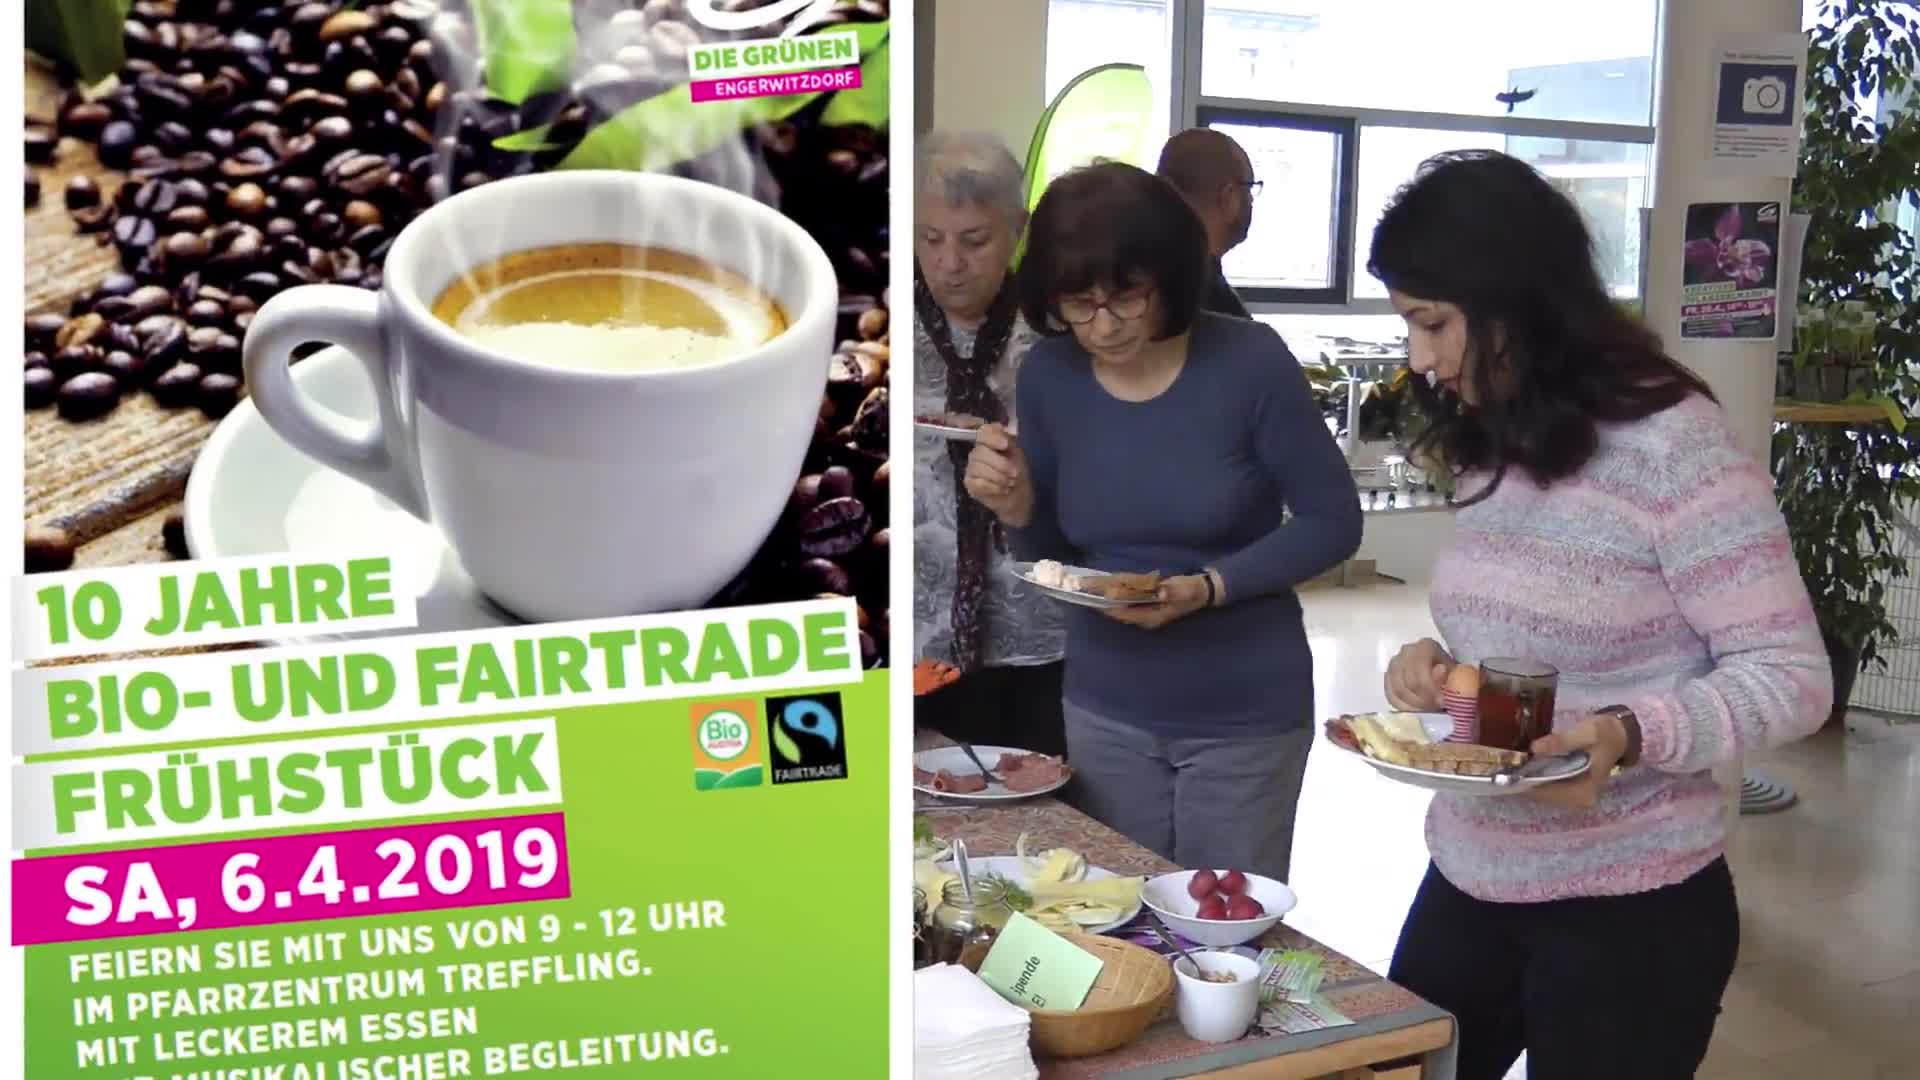 10 Jahre Bio- und Fairtradefrühstück